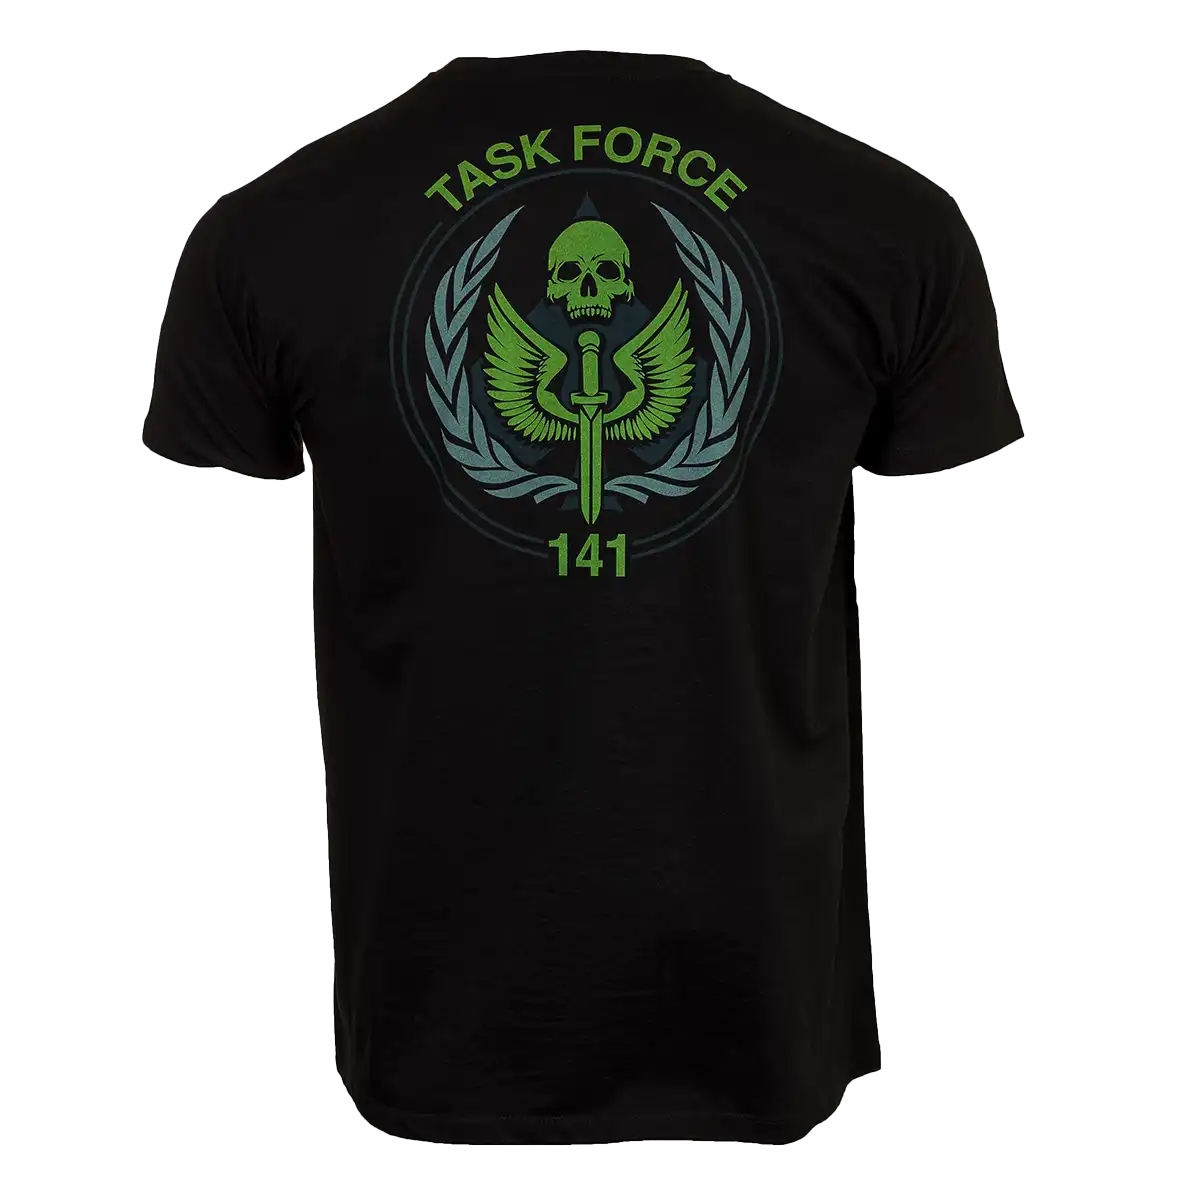 Call of Duty Modern Warfare II T-Shirt "Task Force 141" Black L